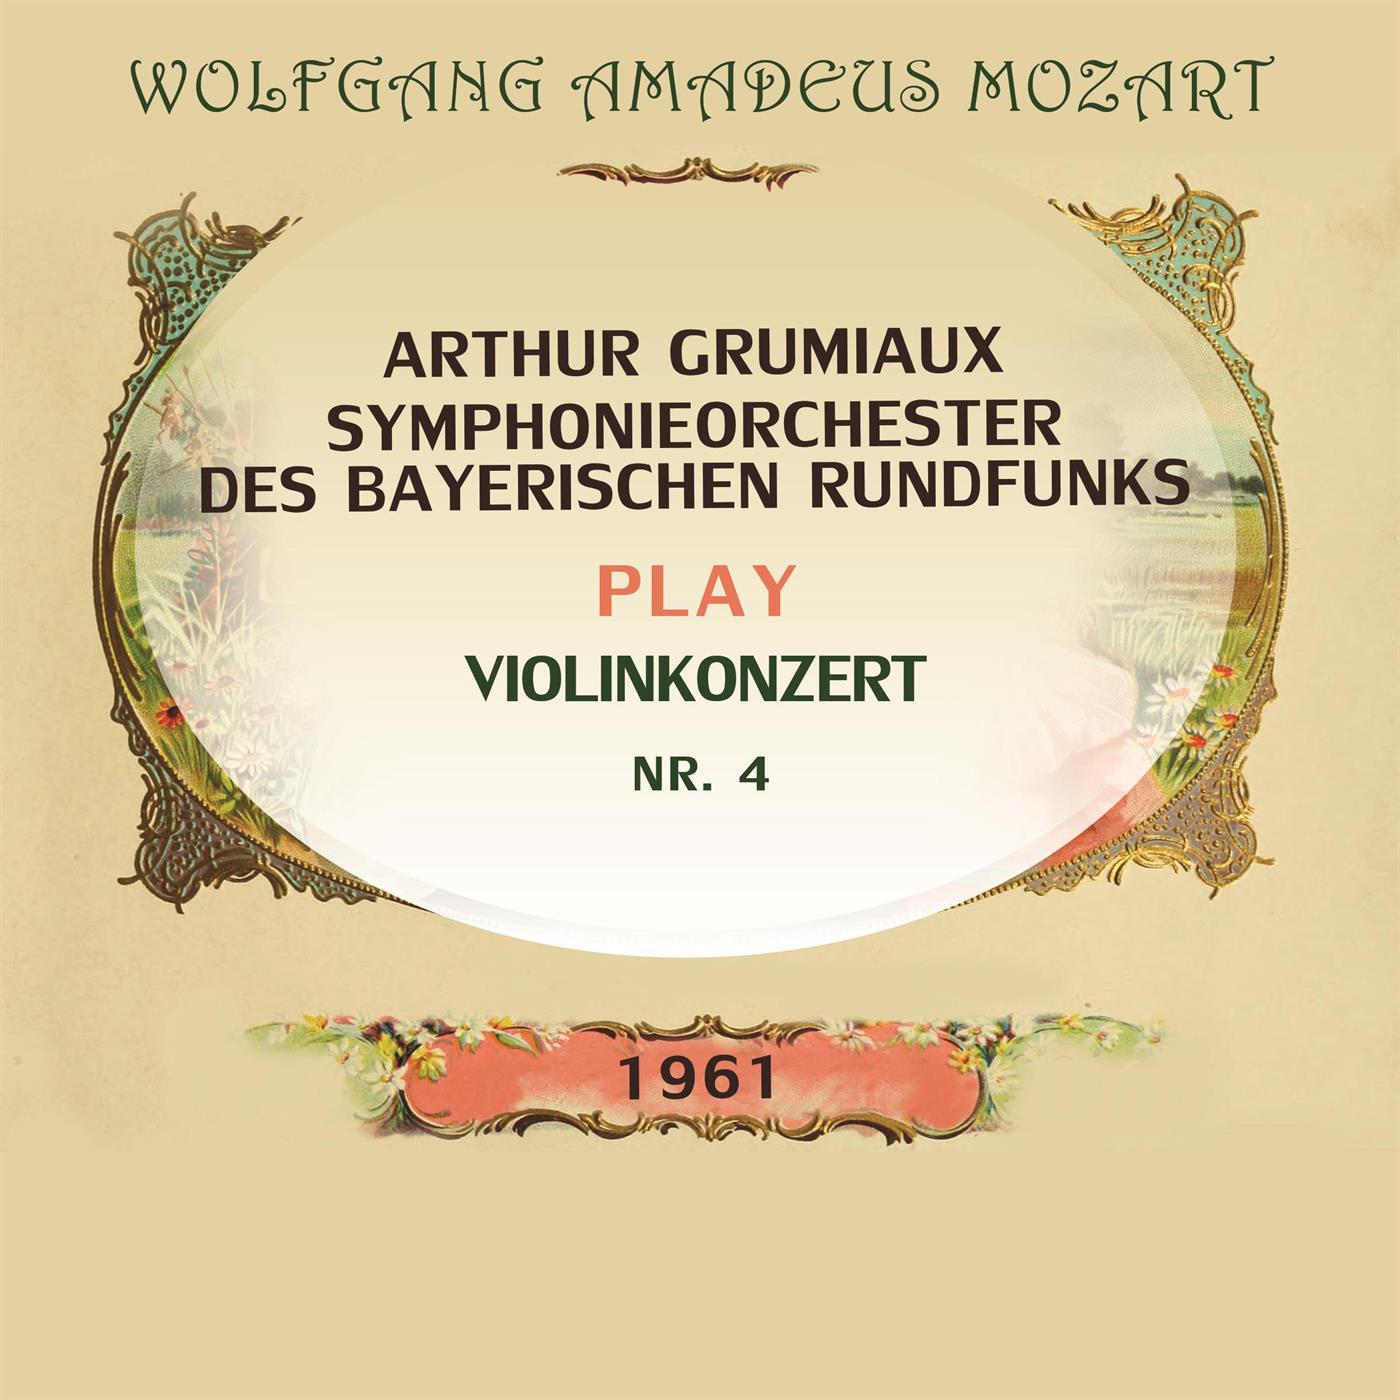 Arthur Grumiaux / Symphonieorchester des Bayerischen Rundfunks play: Wolfgang Amadeus Mozart: Violin专辑